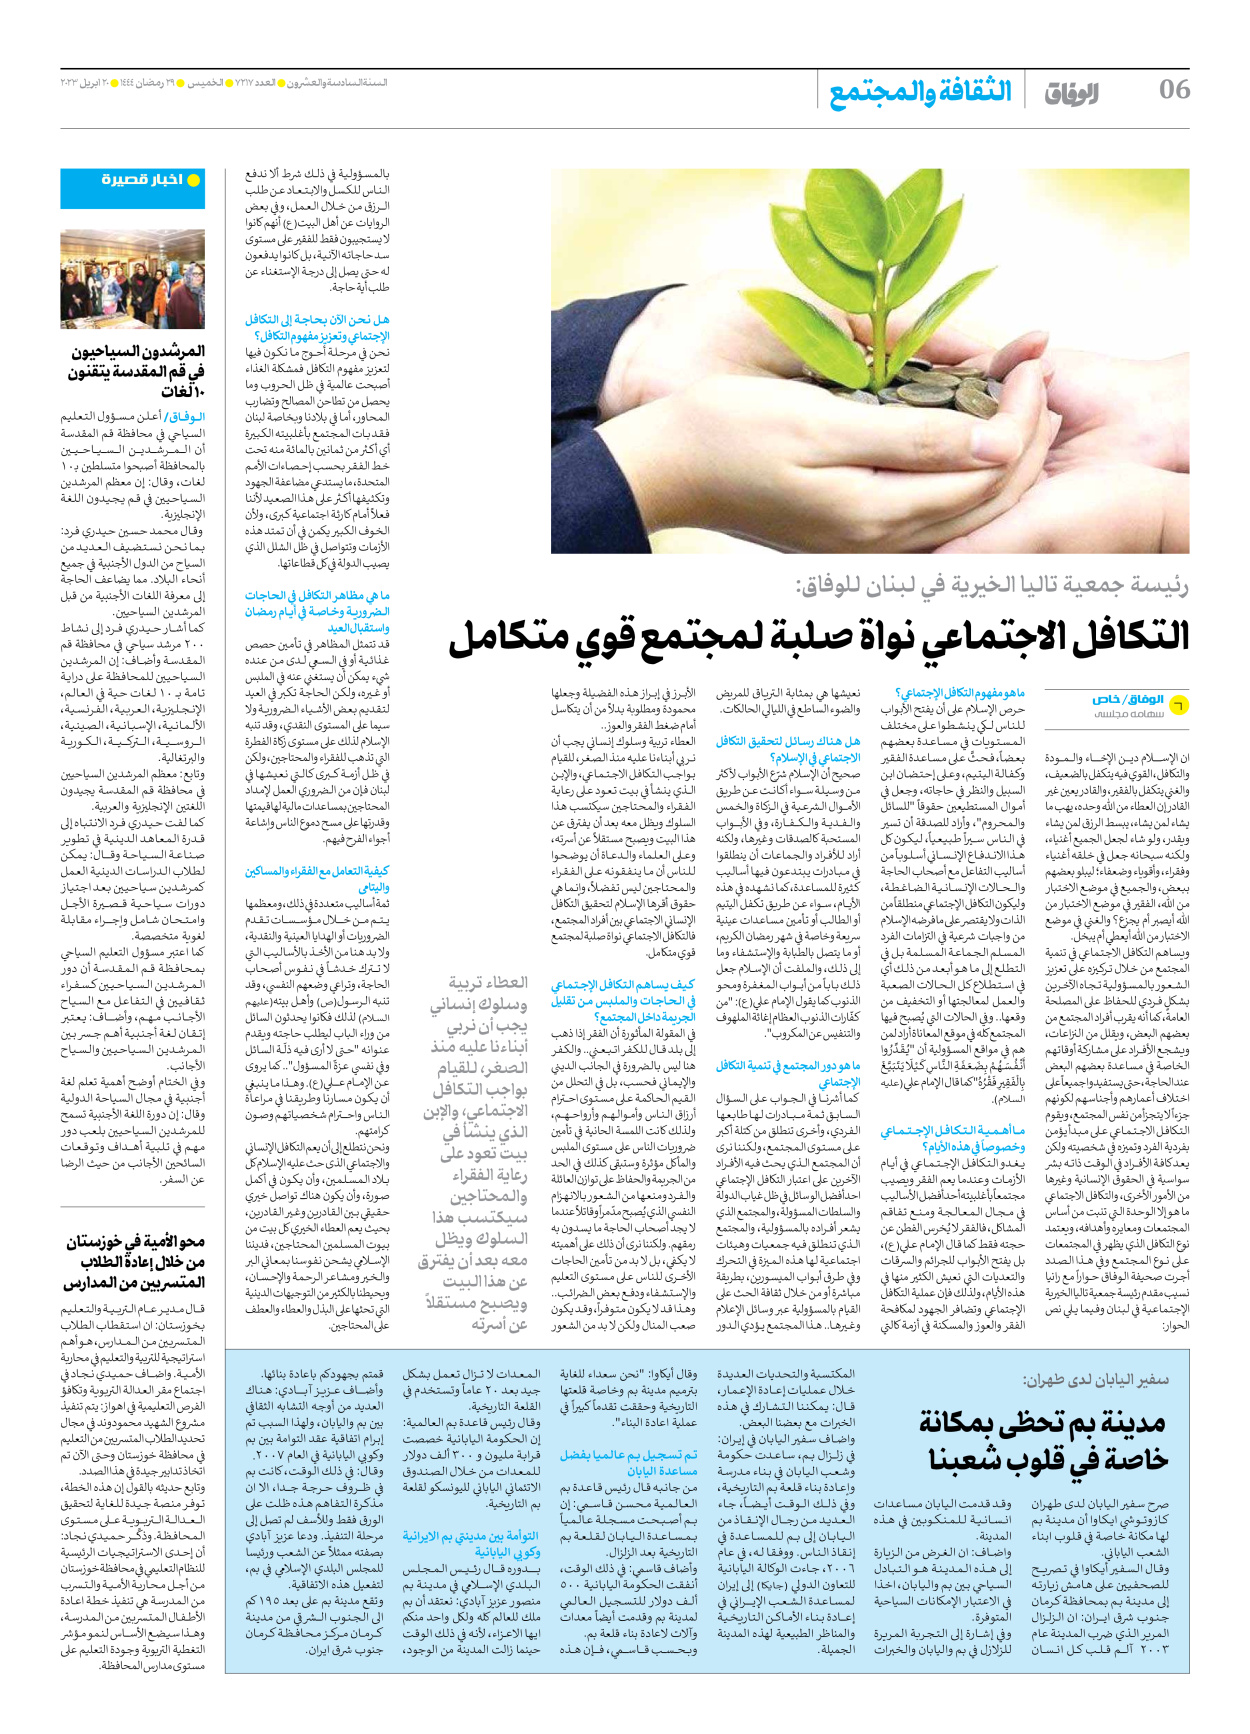 صحیفة ایران الدولیة الوفاق - العدد سبعة آلاف ومائتان وسبعة عشر - ٢٠ أبريل ٢٠٢٣ - الصفحة ٦